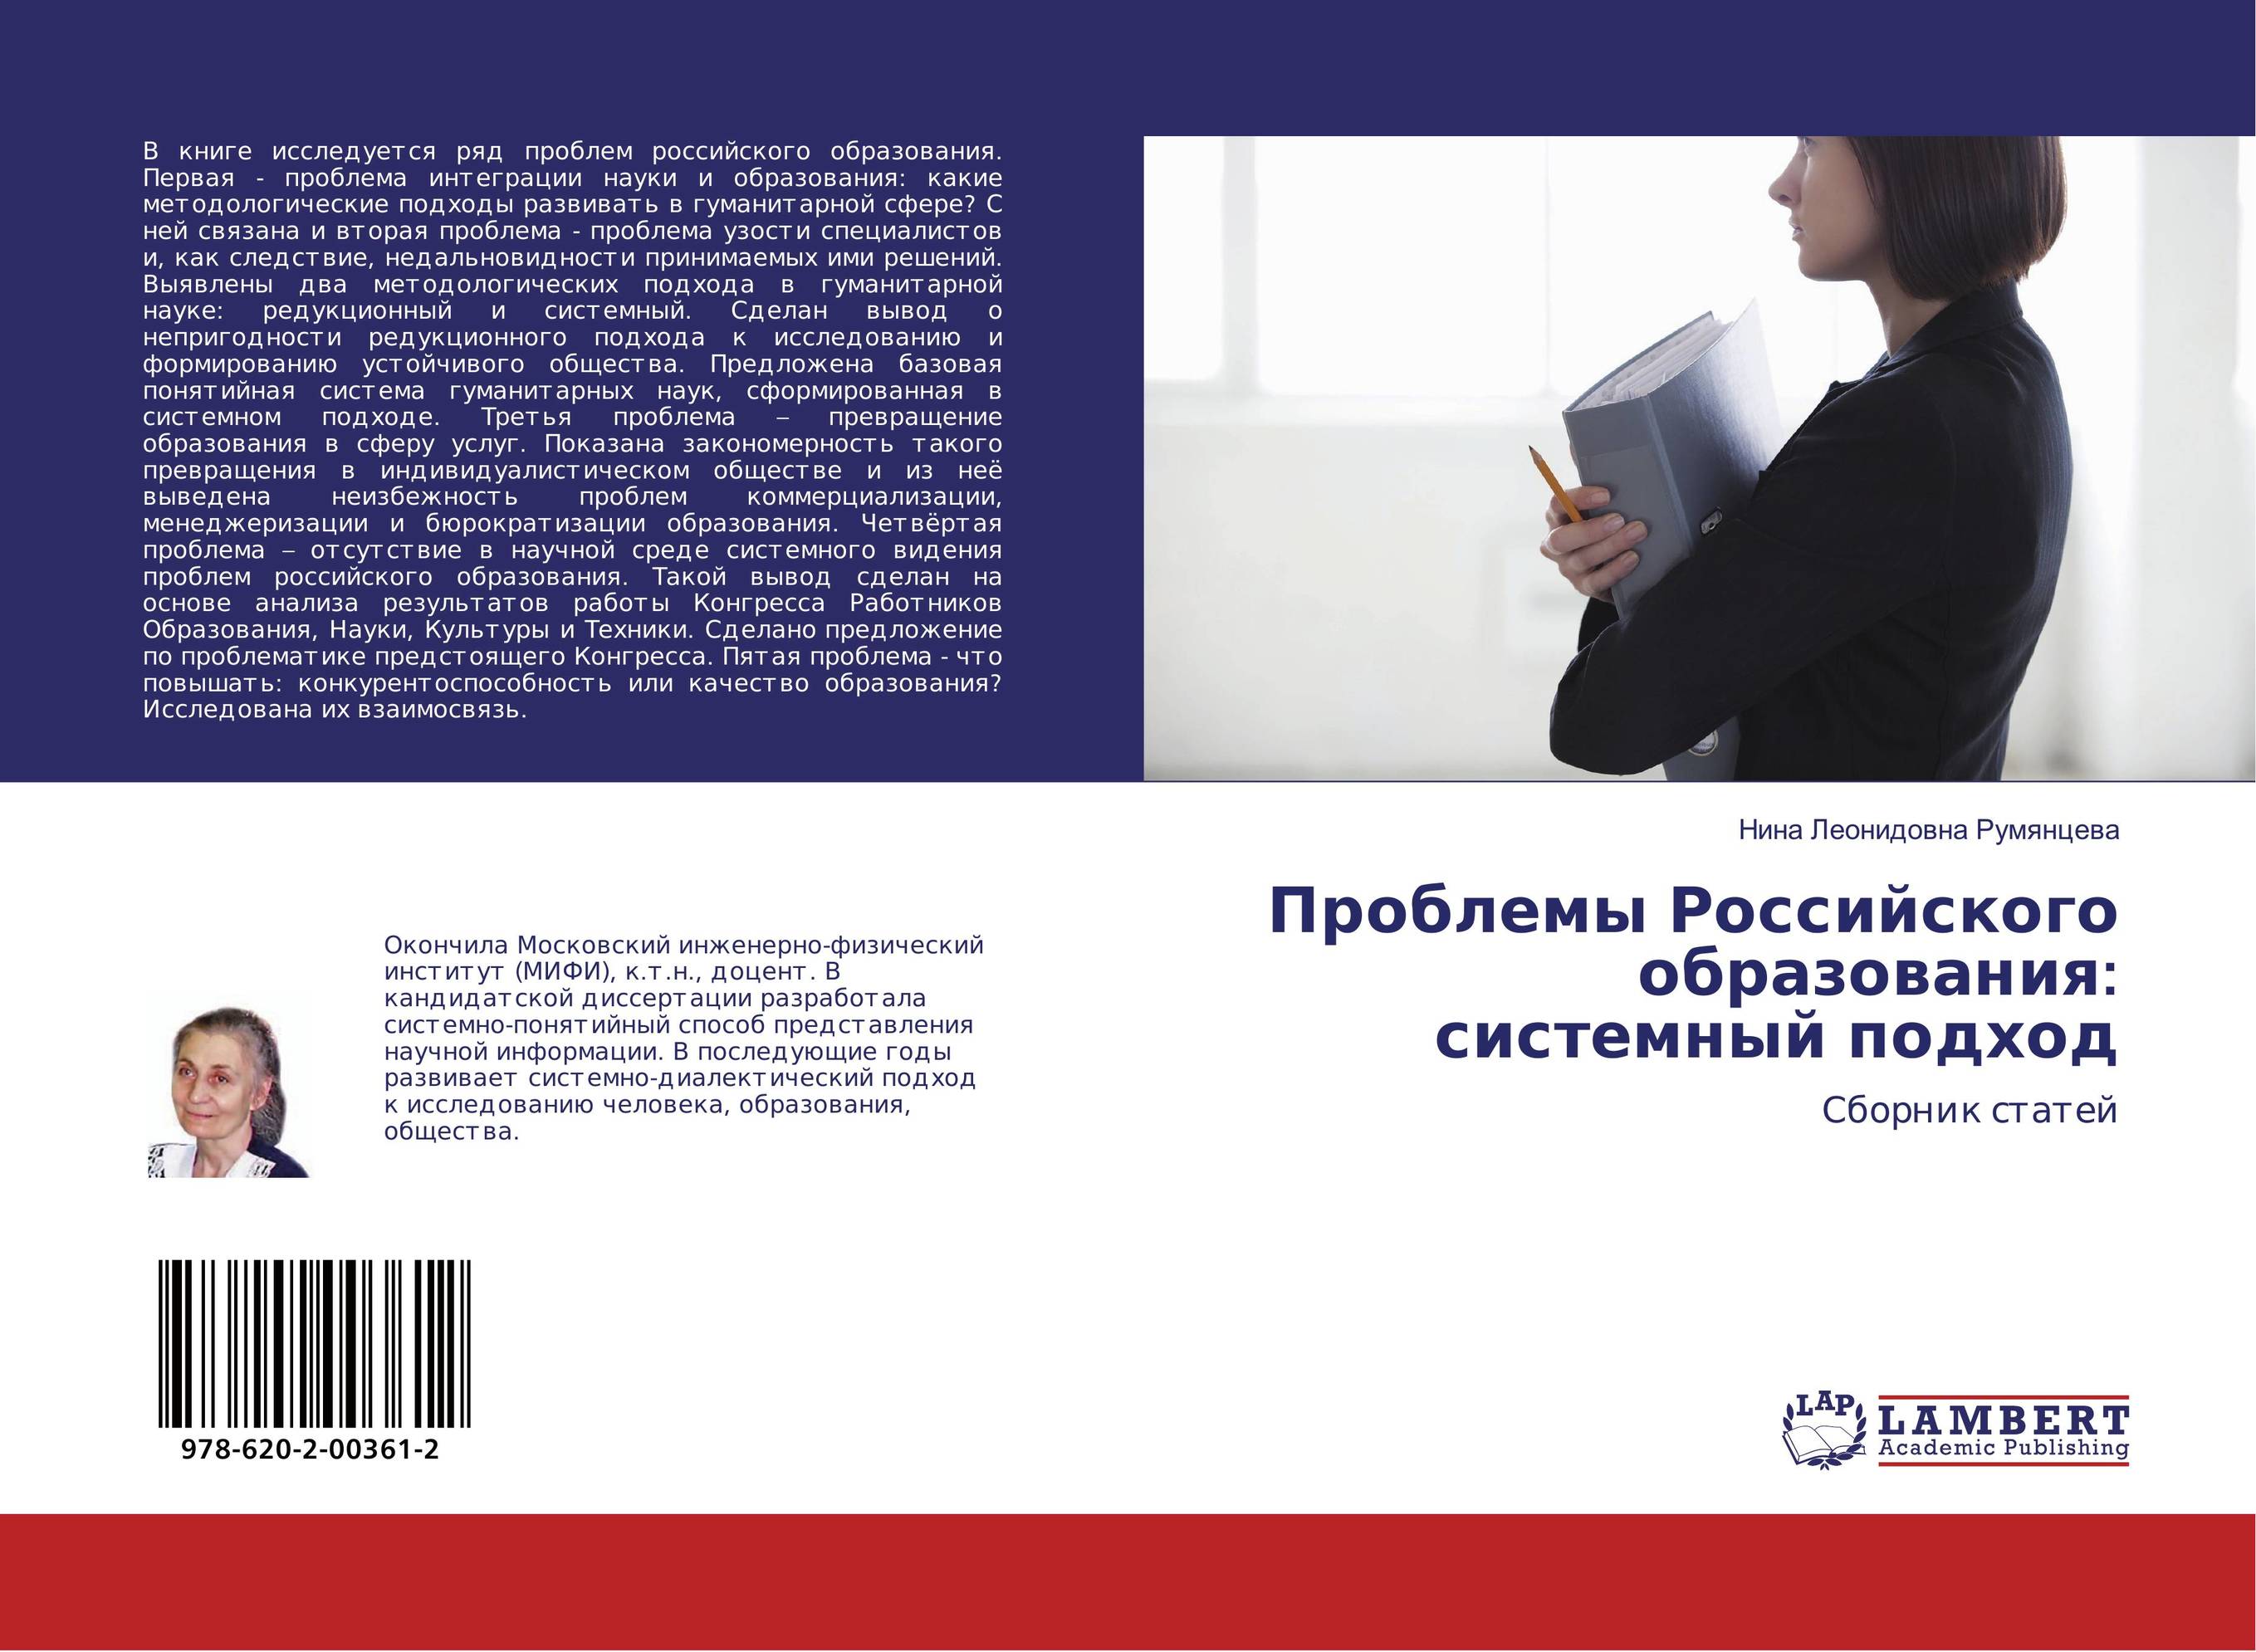 
        Проблемы Российского образования: системный подход. Сборник статей.
      